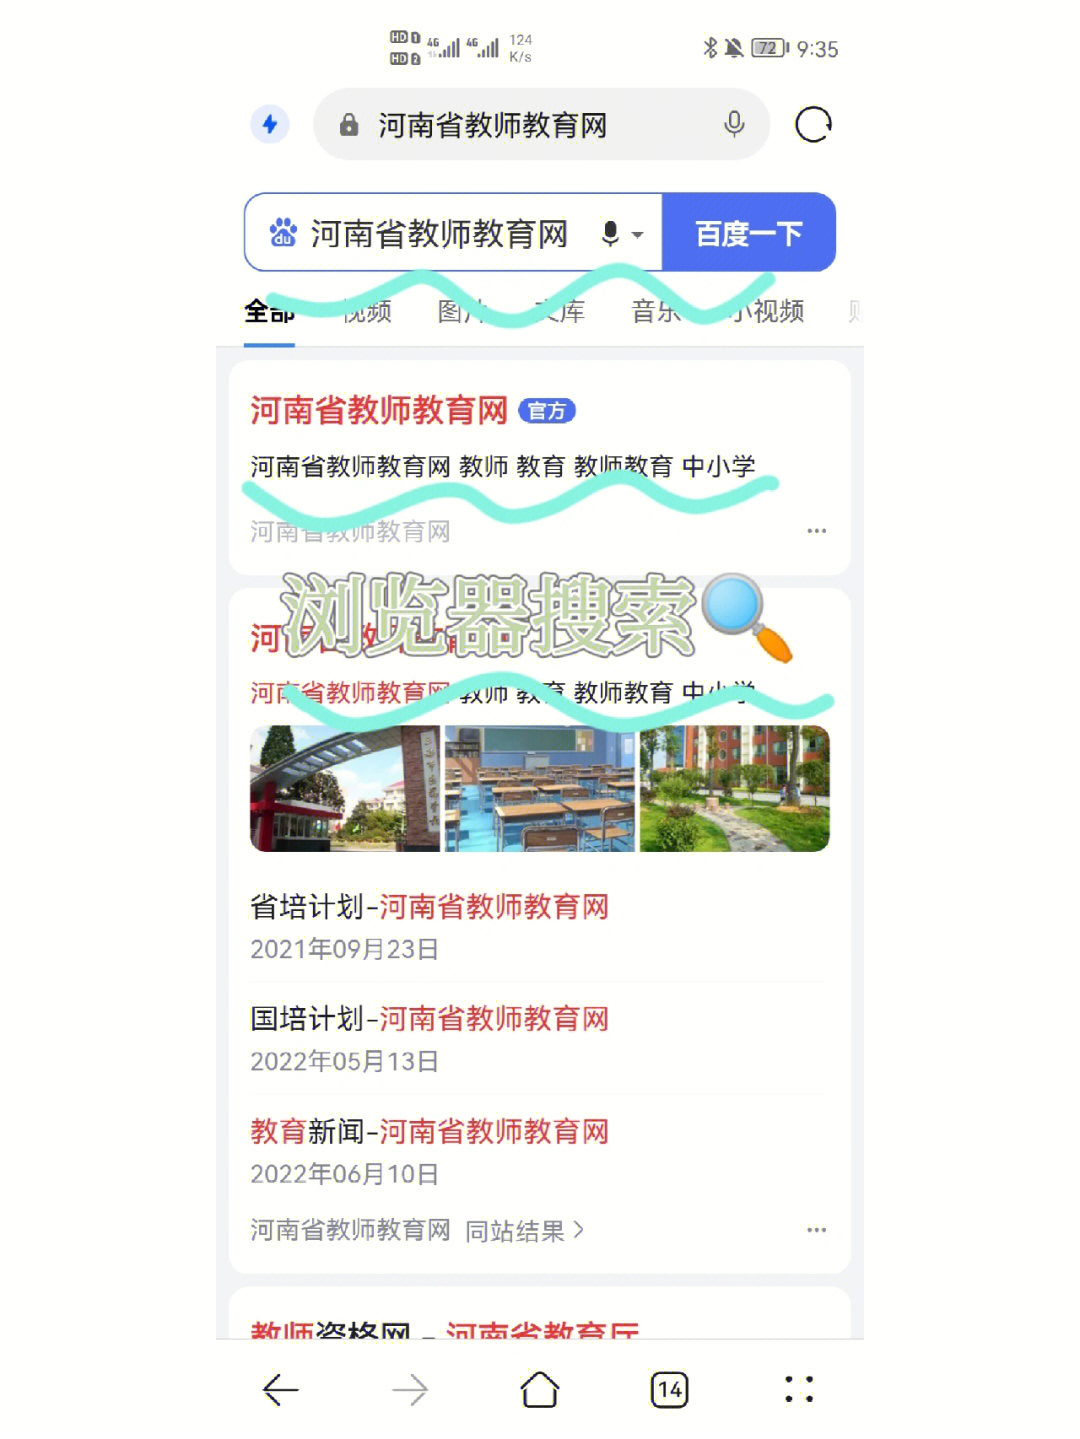 手机登录河南省教师教育网详细步骤